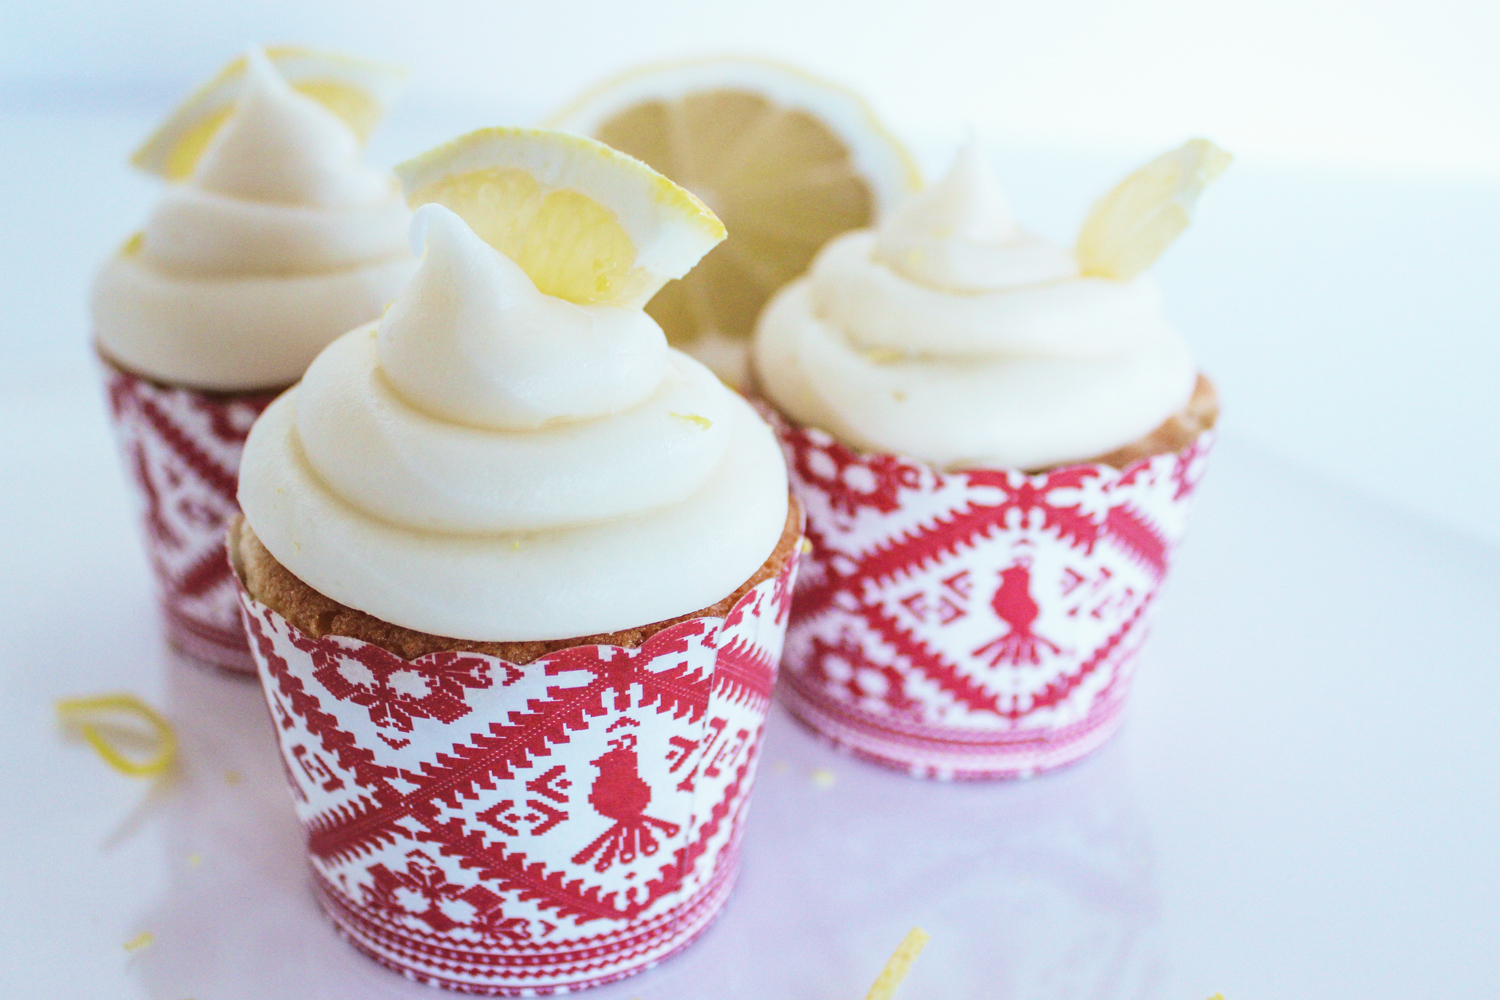 Lemon-Cupcake-with-White-Chocolate-Raspberry-Cream-Cheese